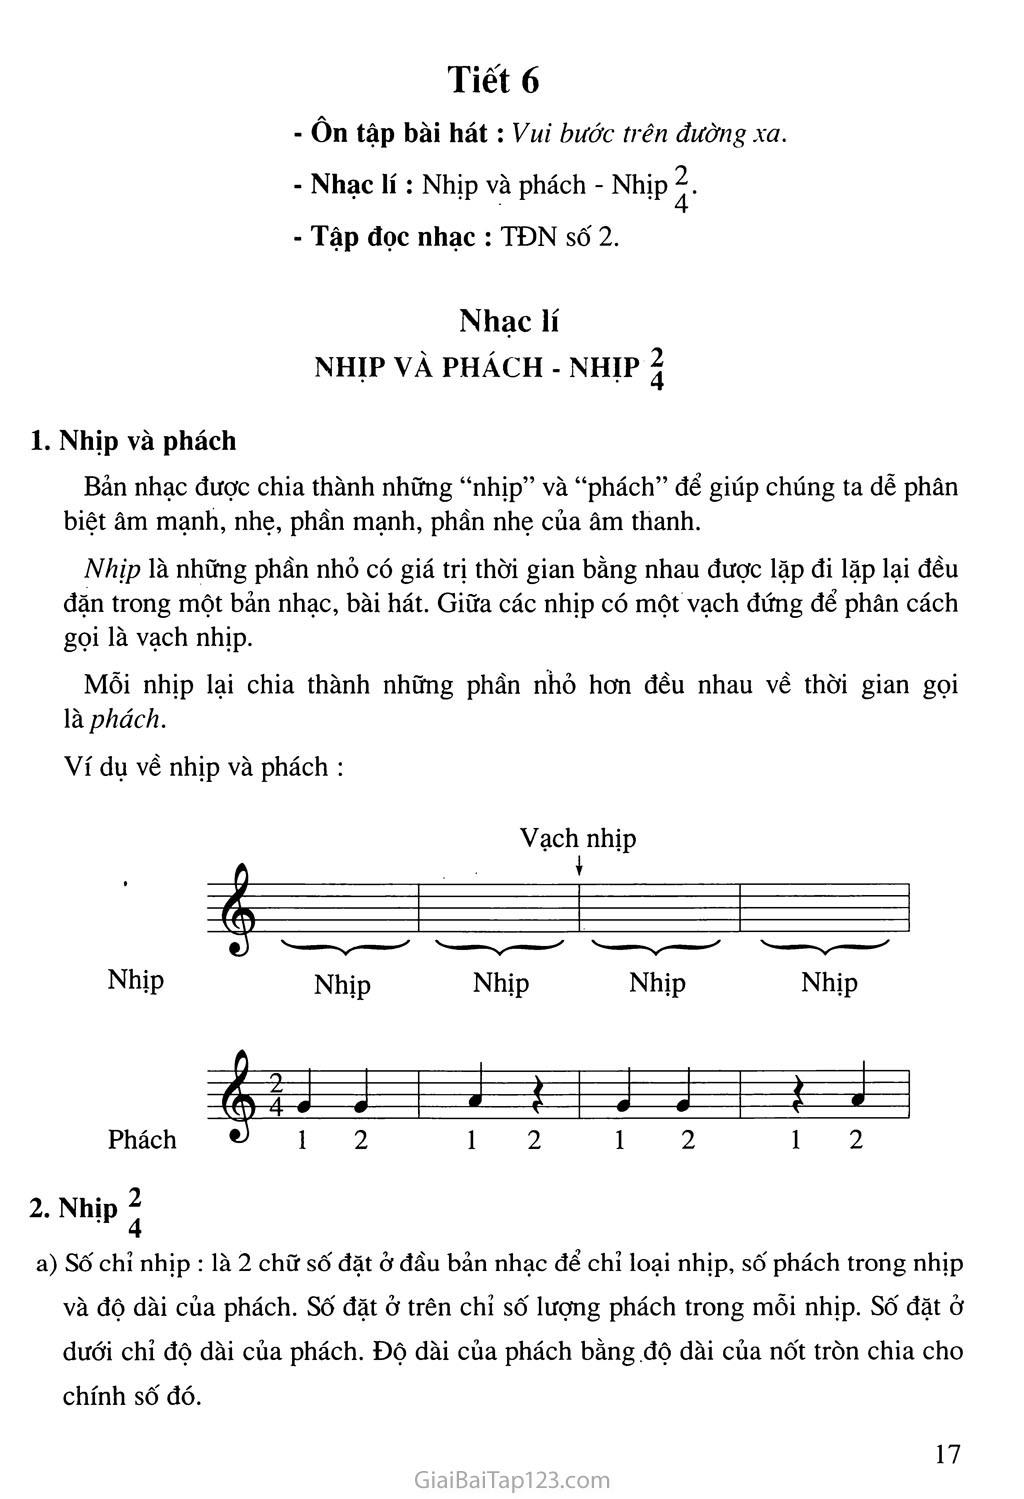 Tiết 6. Nhạc lí: Nhịp và phách - Nhịp 2/4. Tập đọc nhạc: TĐN số 2 trang 1